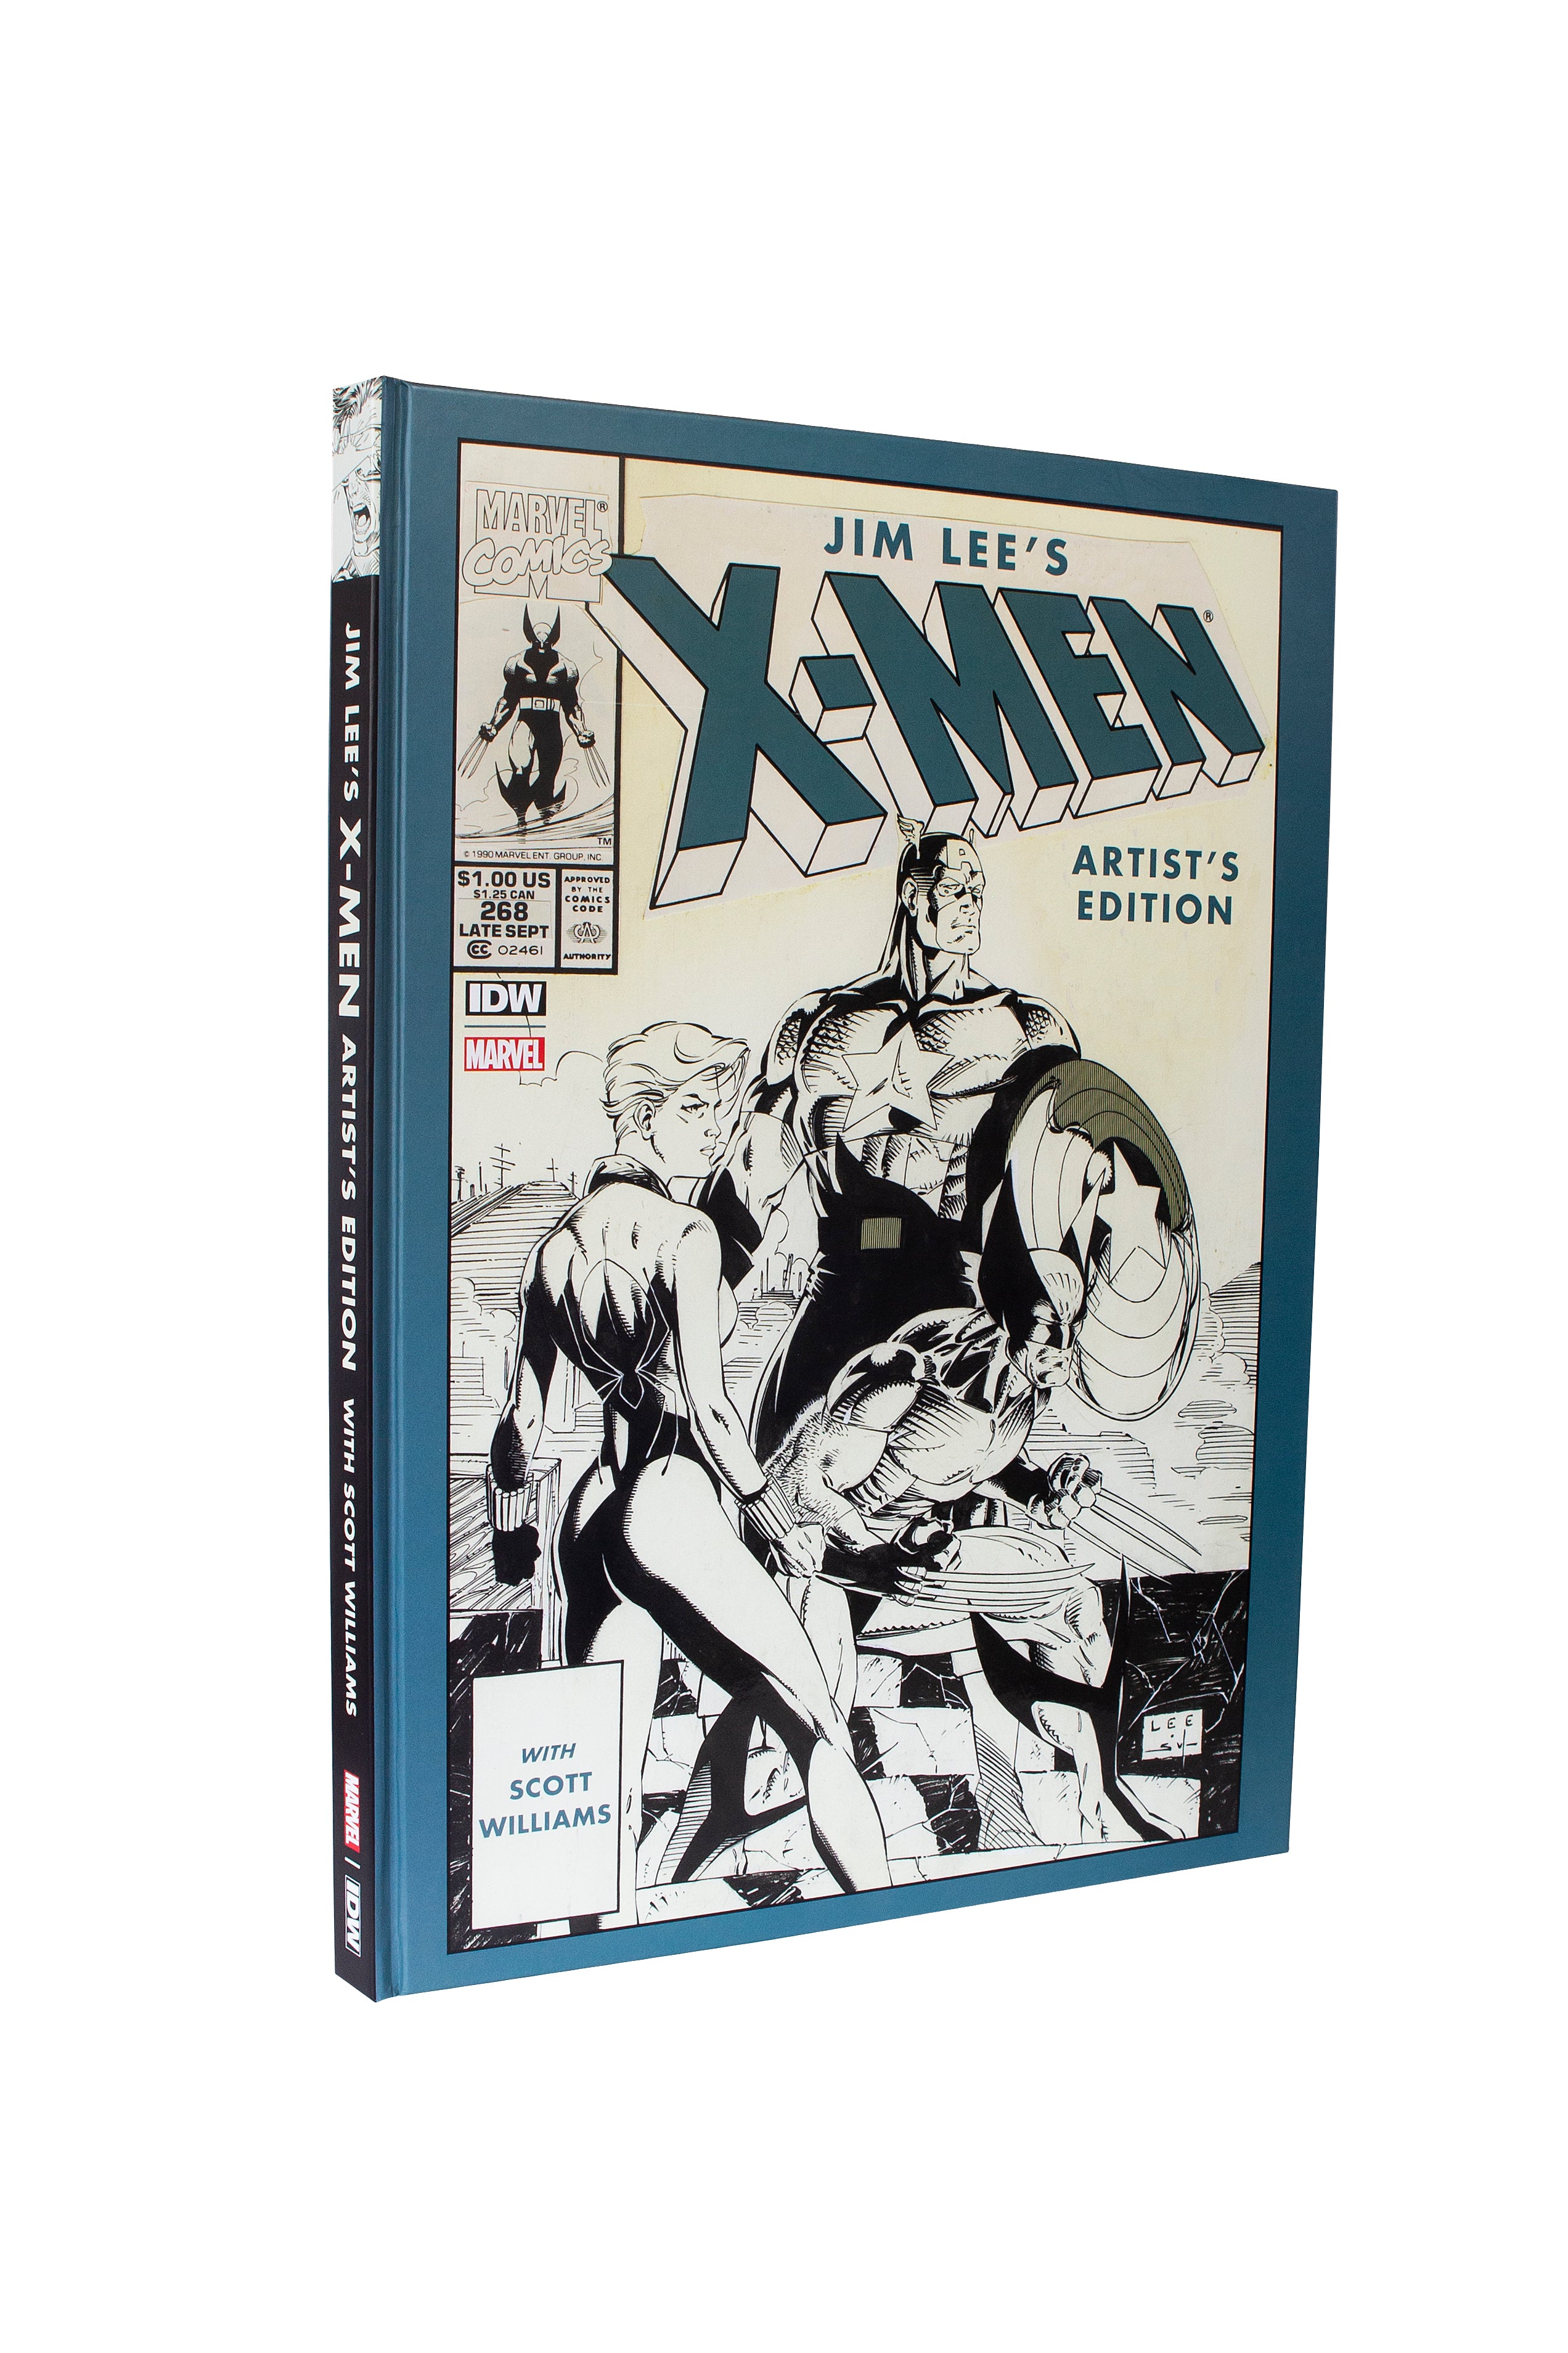 Jim Lee's X-Men Artist's Edition